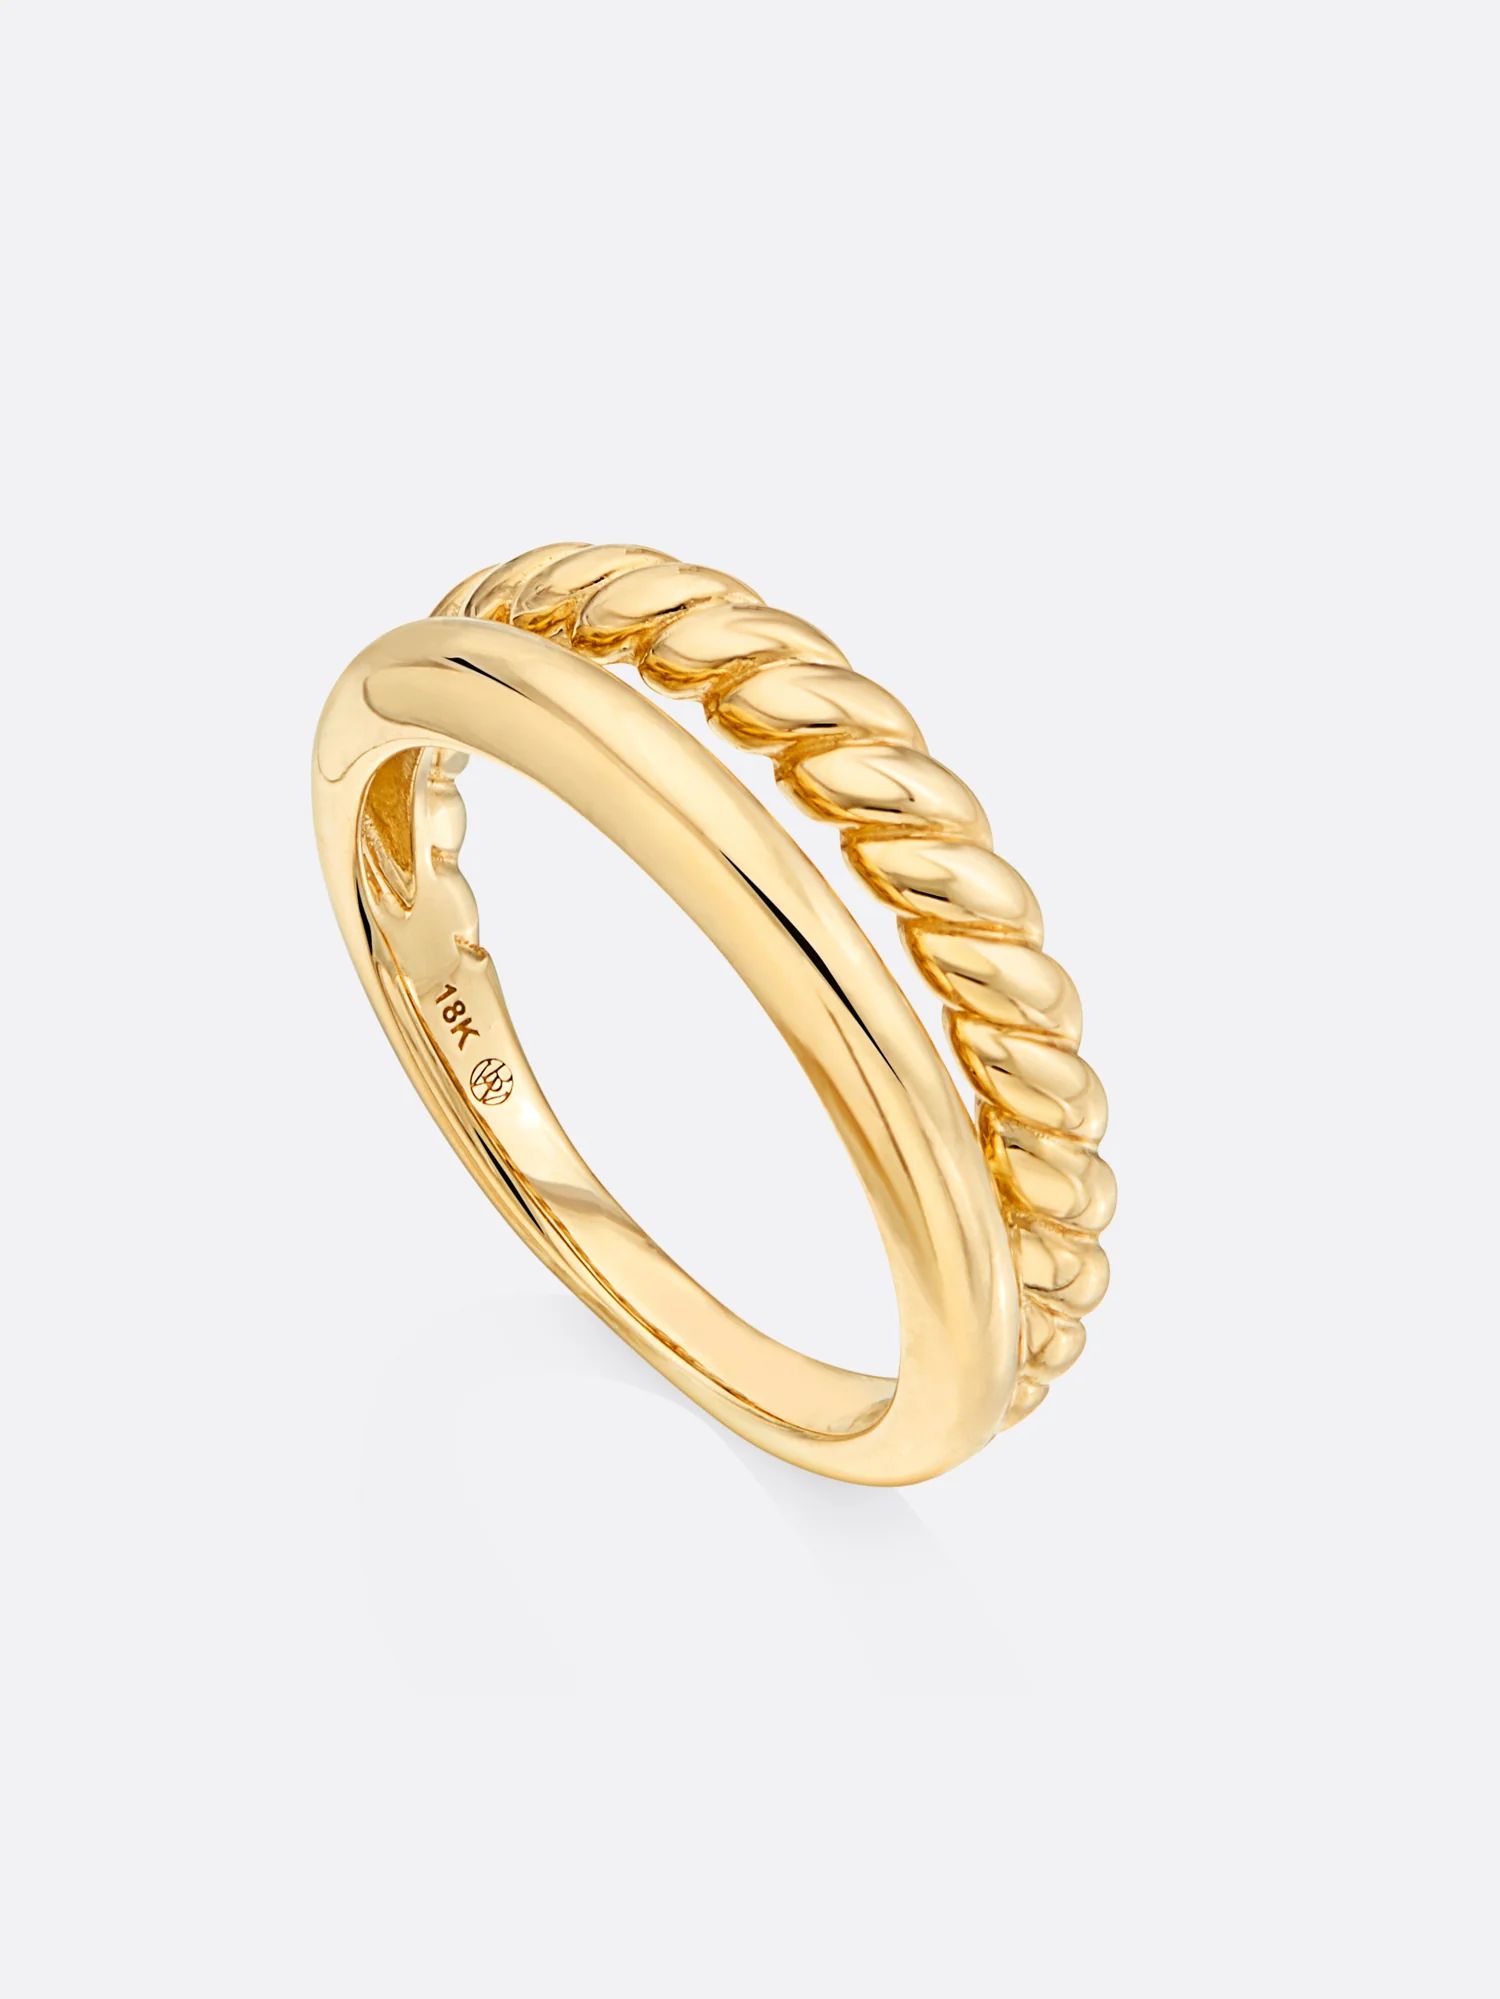 Brochu Walker | Women's Fine Jewelry Icons Yellow Gold Duet Ring | Brochu Walker